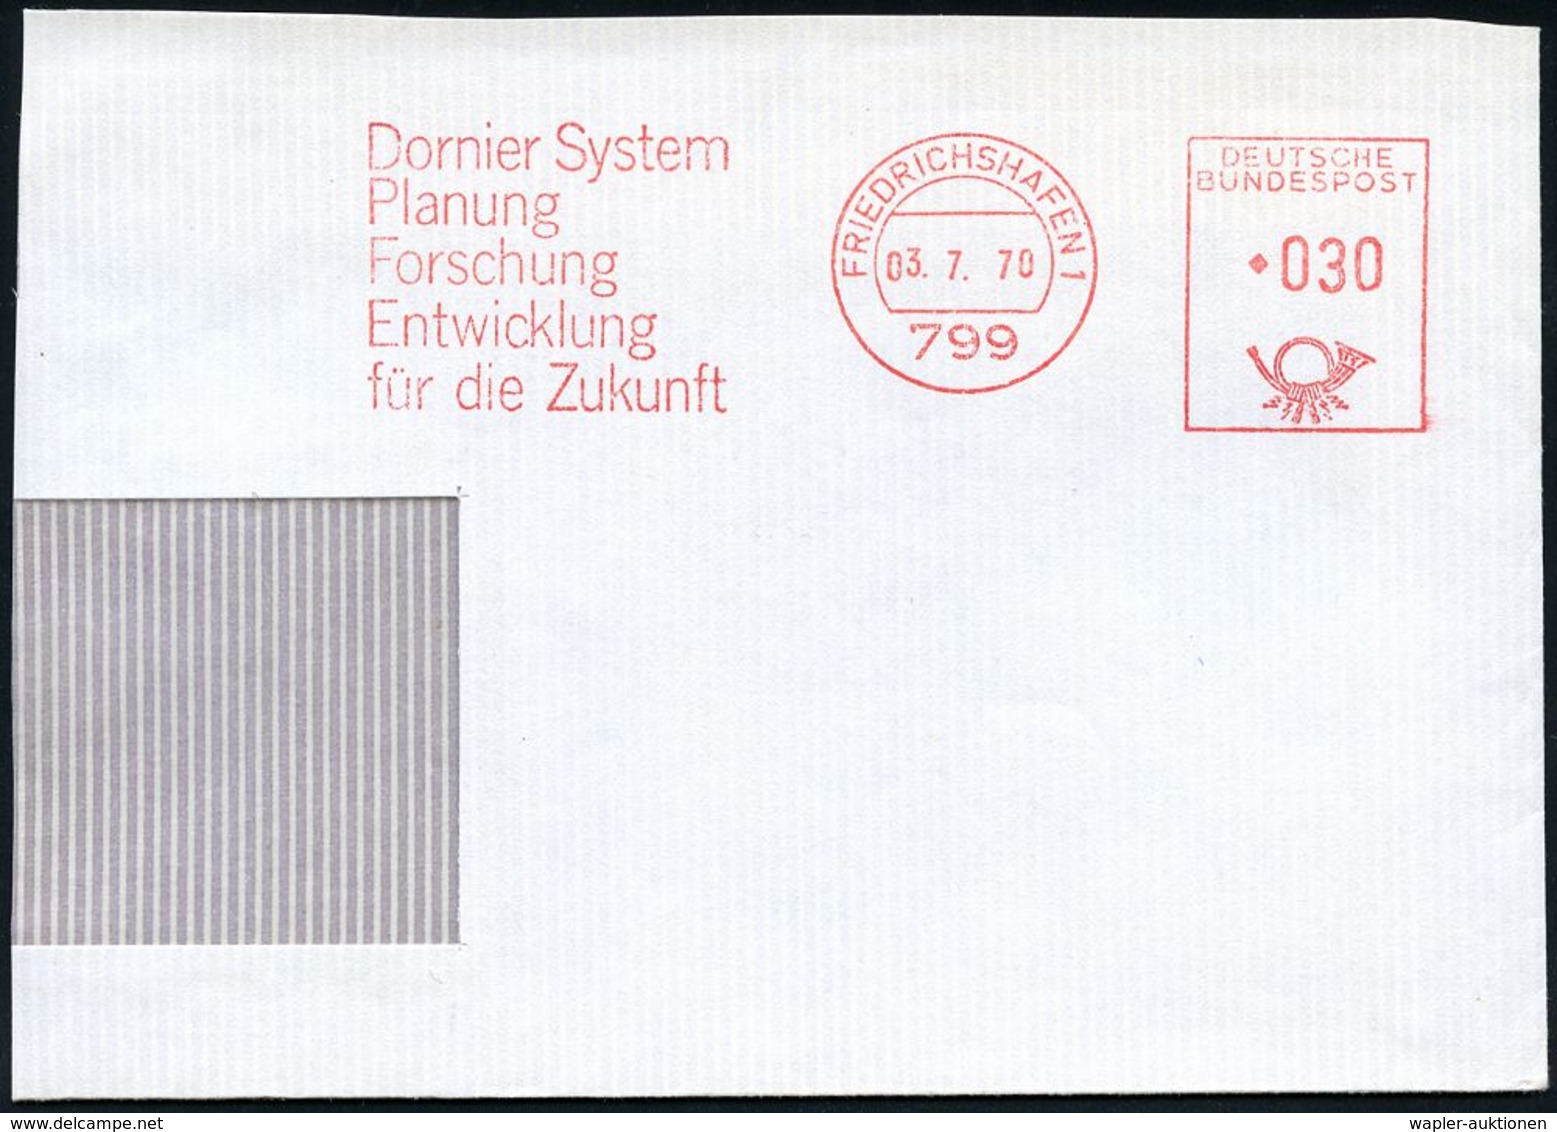 FLUGZEUGINDUSTRIE & -TYPEN : 799 #bzw.# 88045 FRIEDRICHSHAFEN 1/ Dornier System.. #bzw.# Dornier GmbH 1970/95 2 Verschie - Airplanes